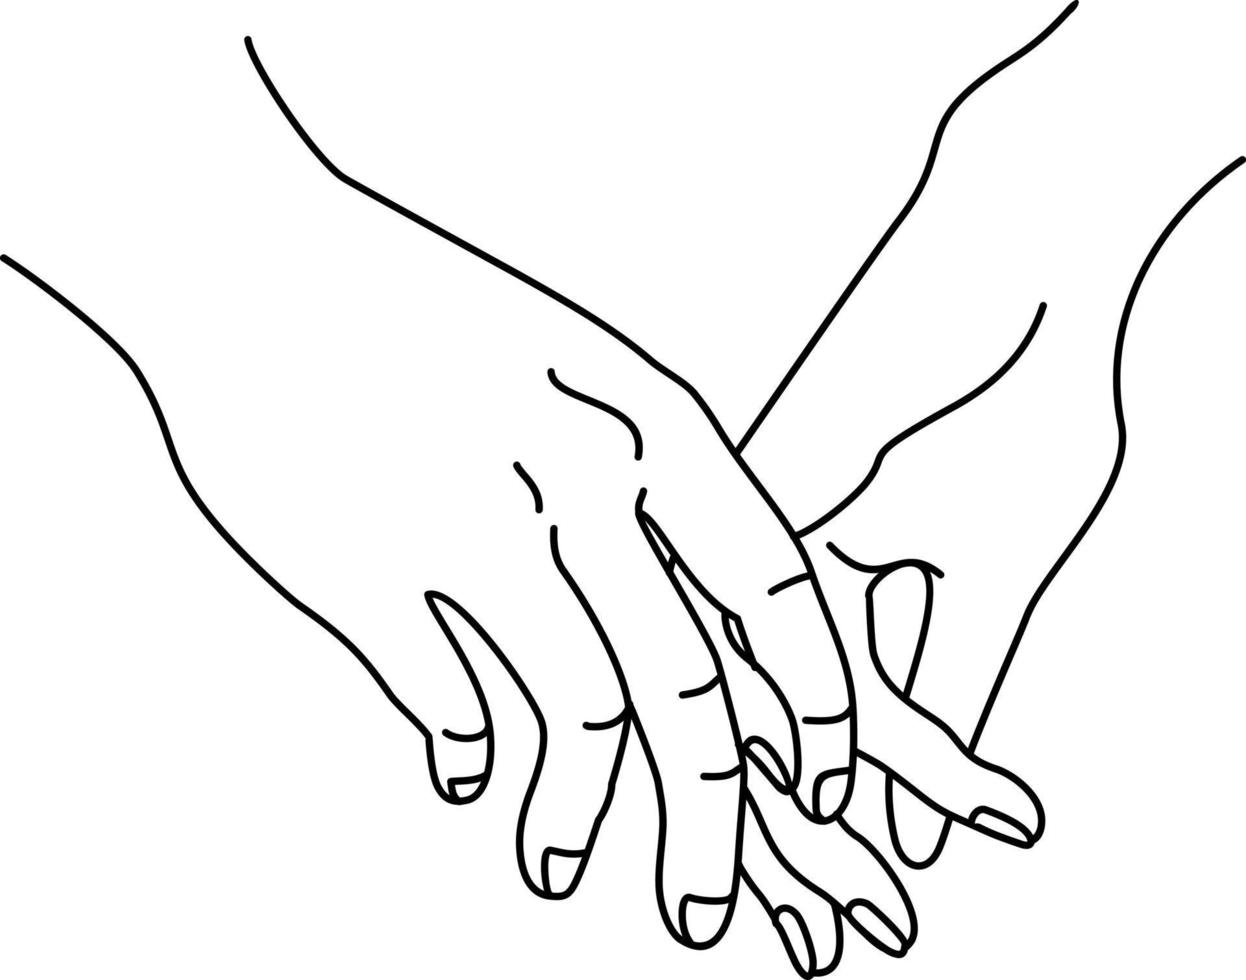 händerna på ett par håller varandra, vilket betyder samhörighet och tillgivenhet. en siluettillustration i en enkel ritning. linjär ritning. grattis på alla hjärtans dag. vykort, affisch vektor